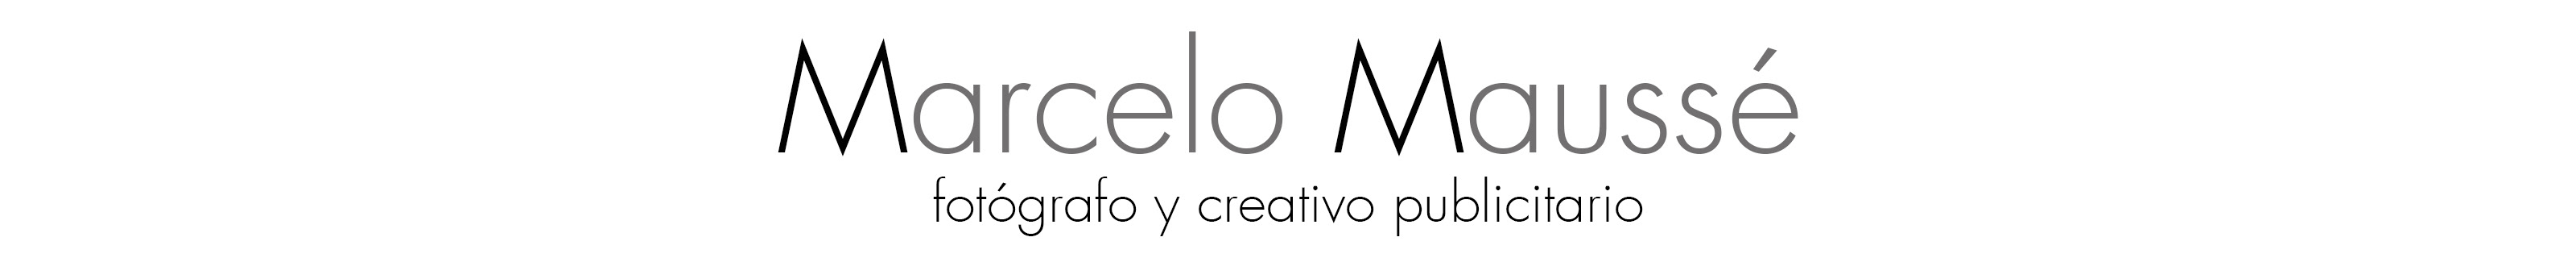 Marcelo Maussé's profile banner